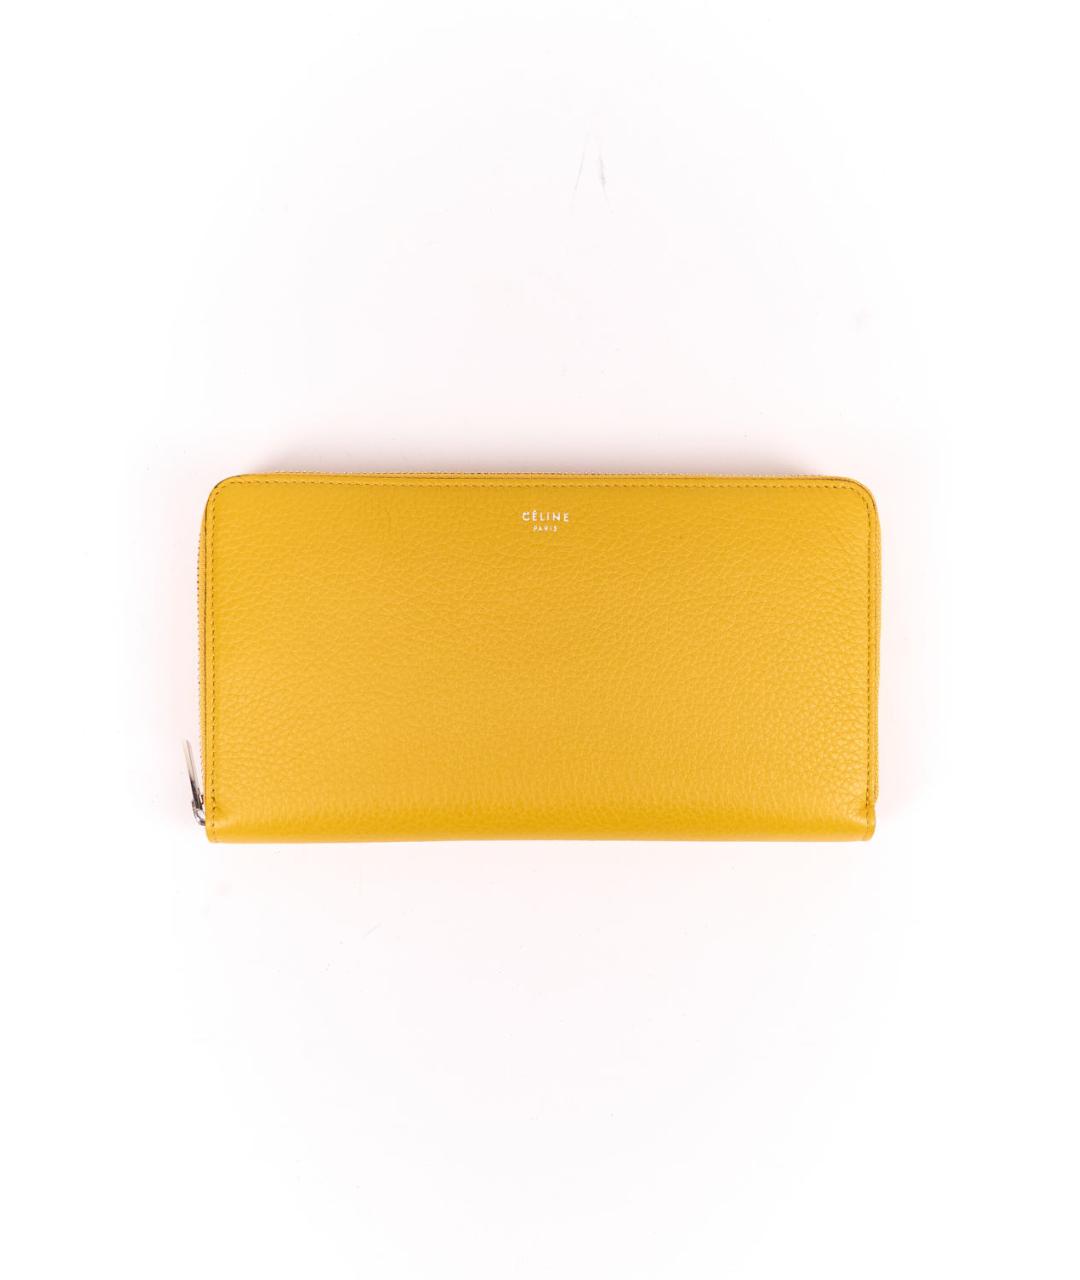 CELINE PRE-OWNED Желтый кожаный кошелек, фото 1